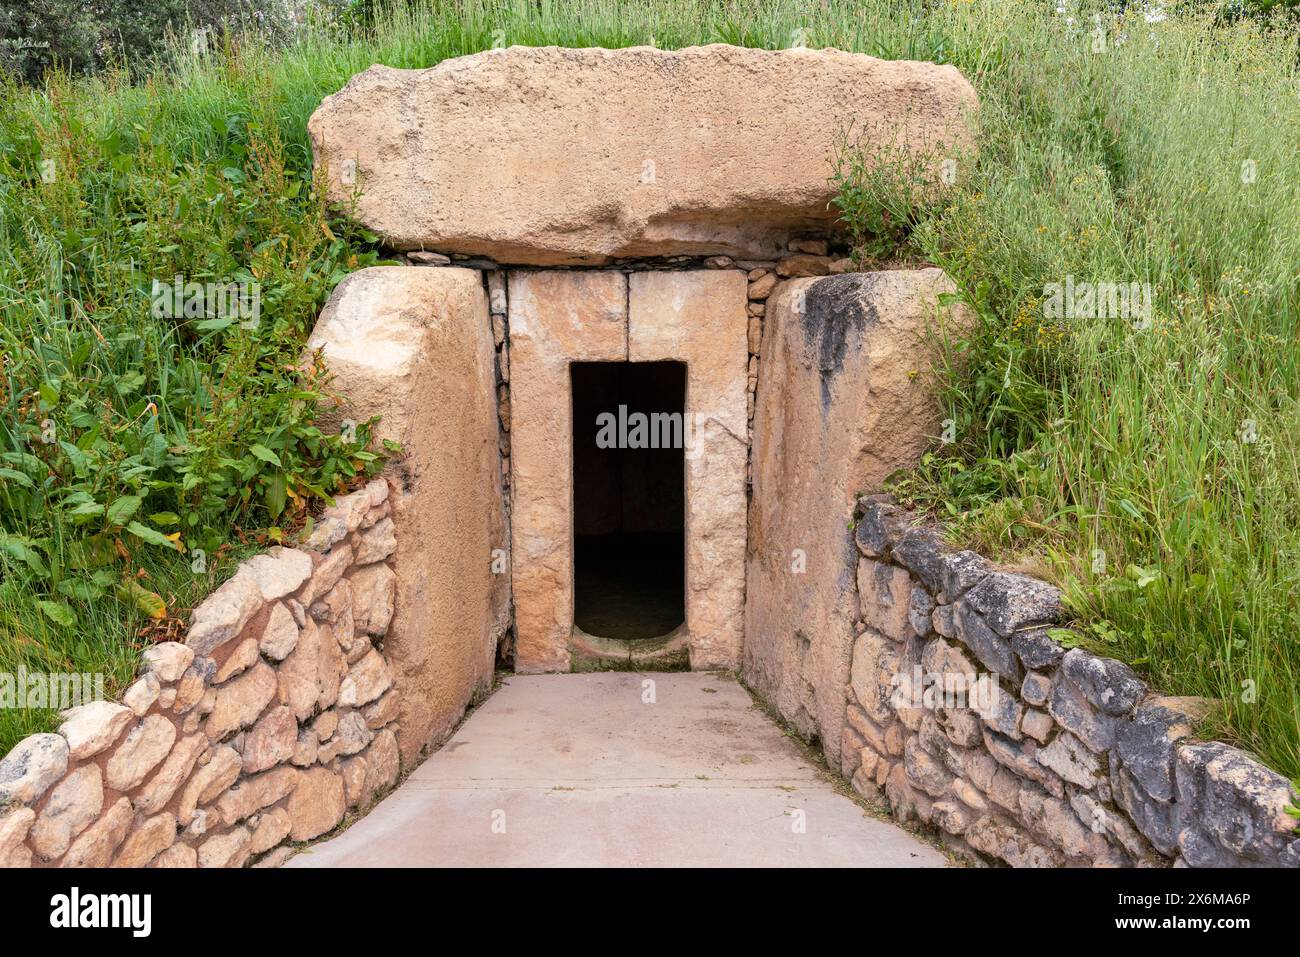 Reconstrucción de un dolmen del neolítico, monumento funerario prehistórico, en el Parque de las Ciencias de Granada Foto Stock